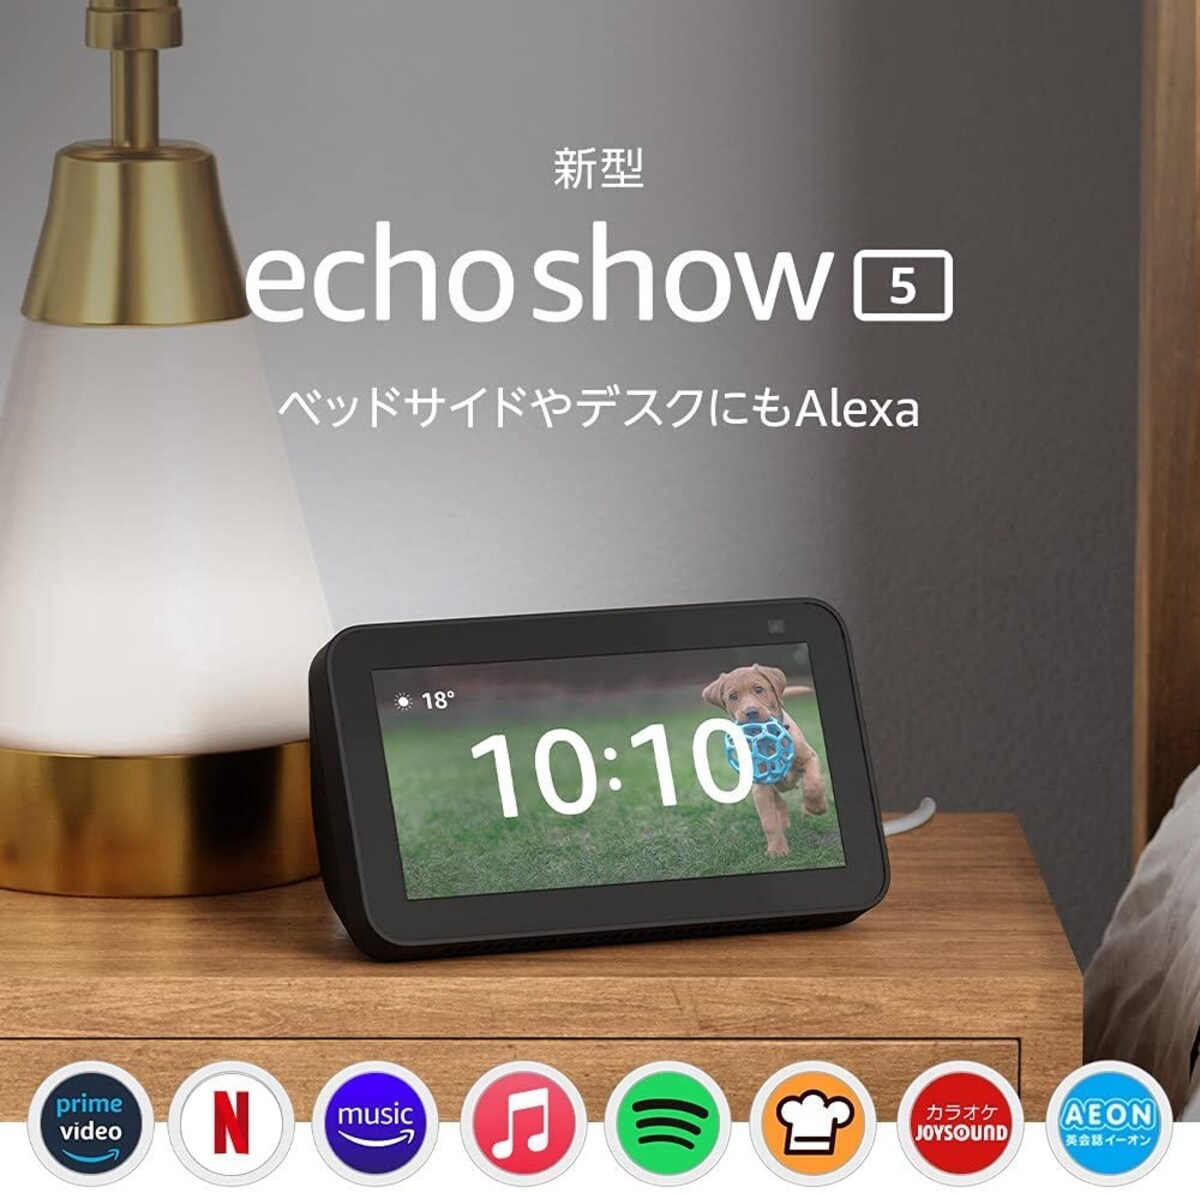 【新型】Echo Show 5 (エコーショー5) 第2世代 - スマートディスプレイ with Alexa